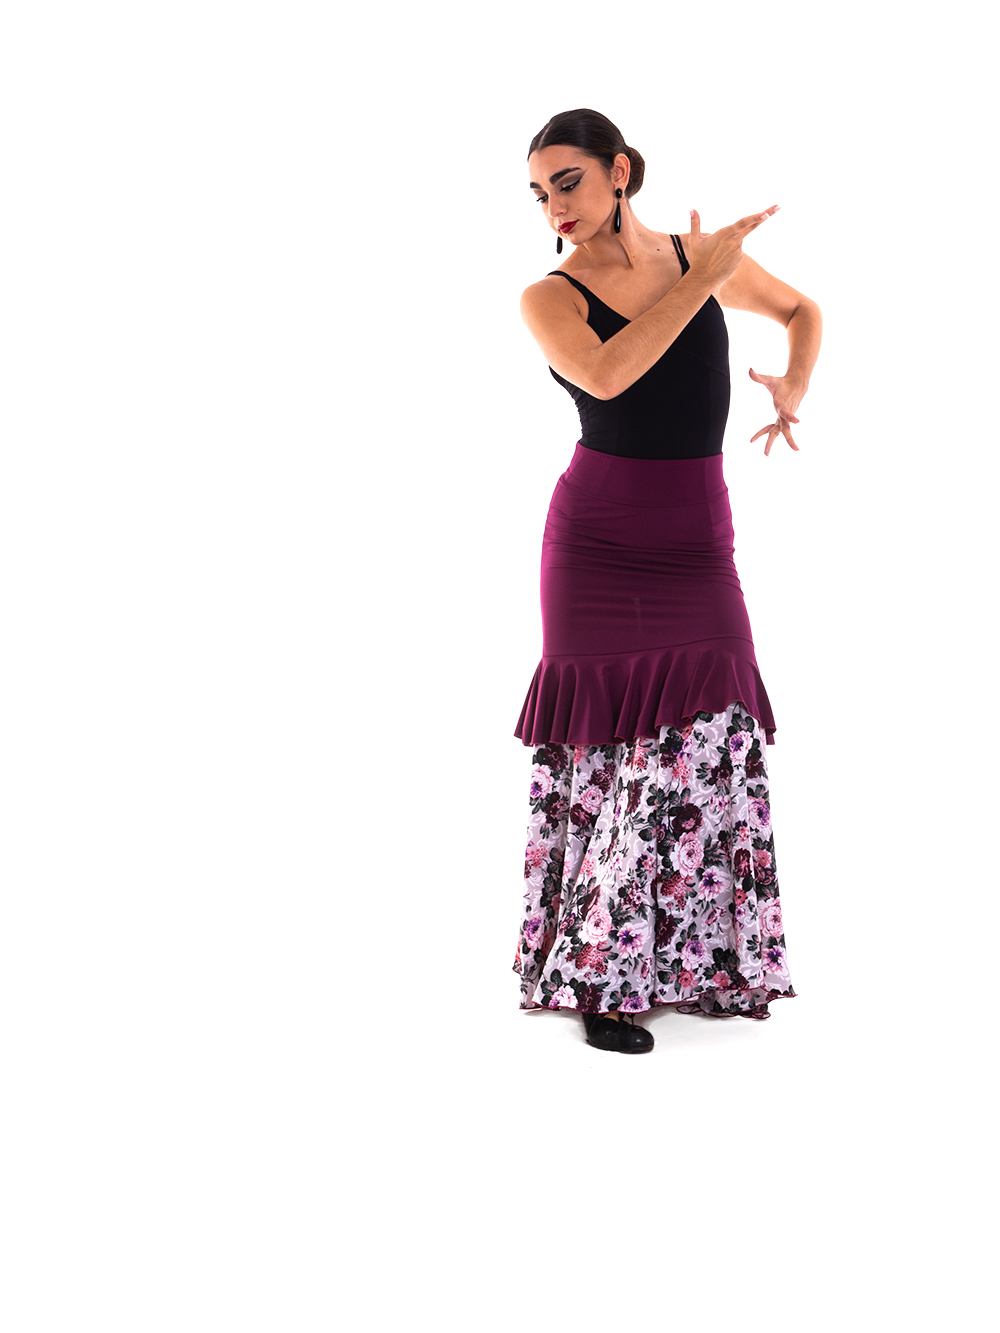 Faldas flamencas de baile y faldas para bailar flamenco modelo